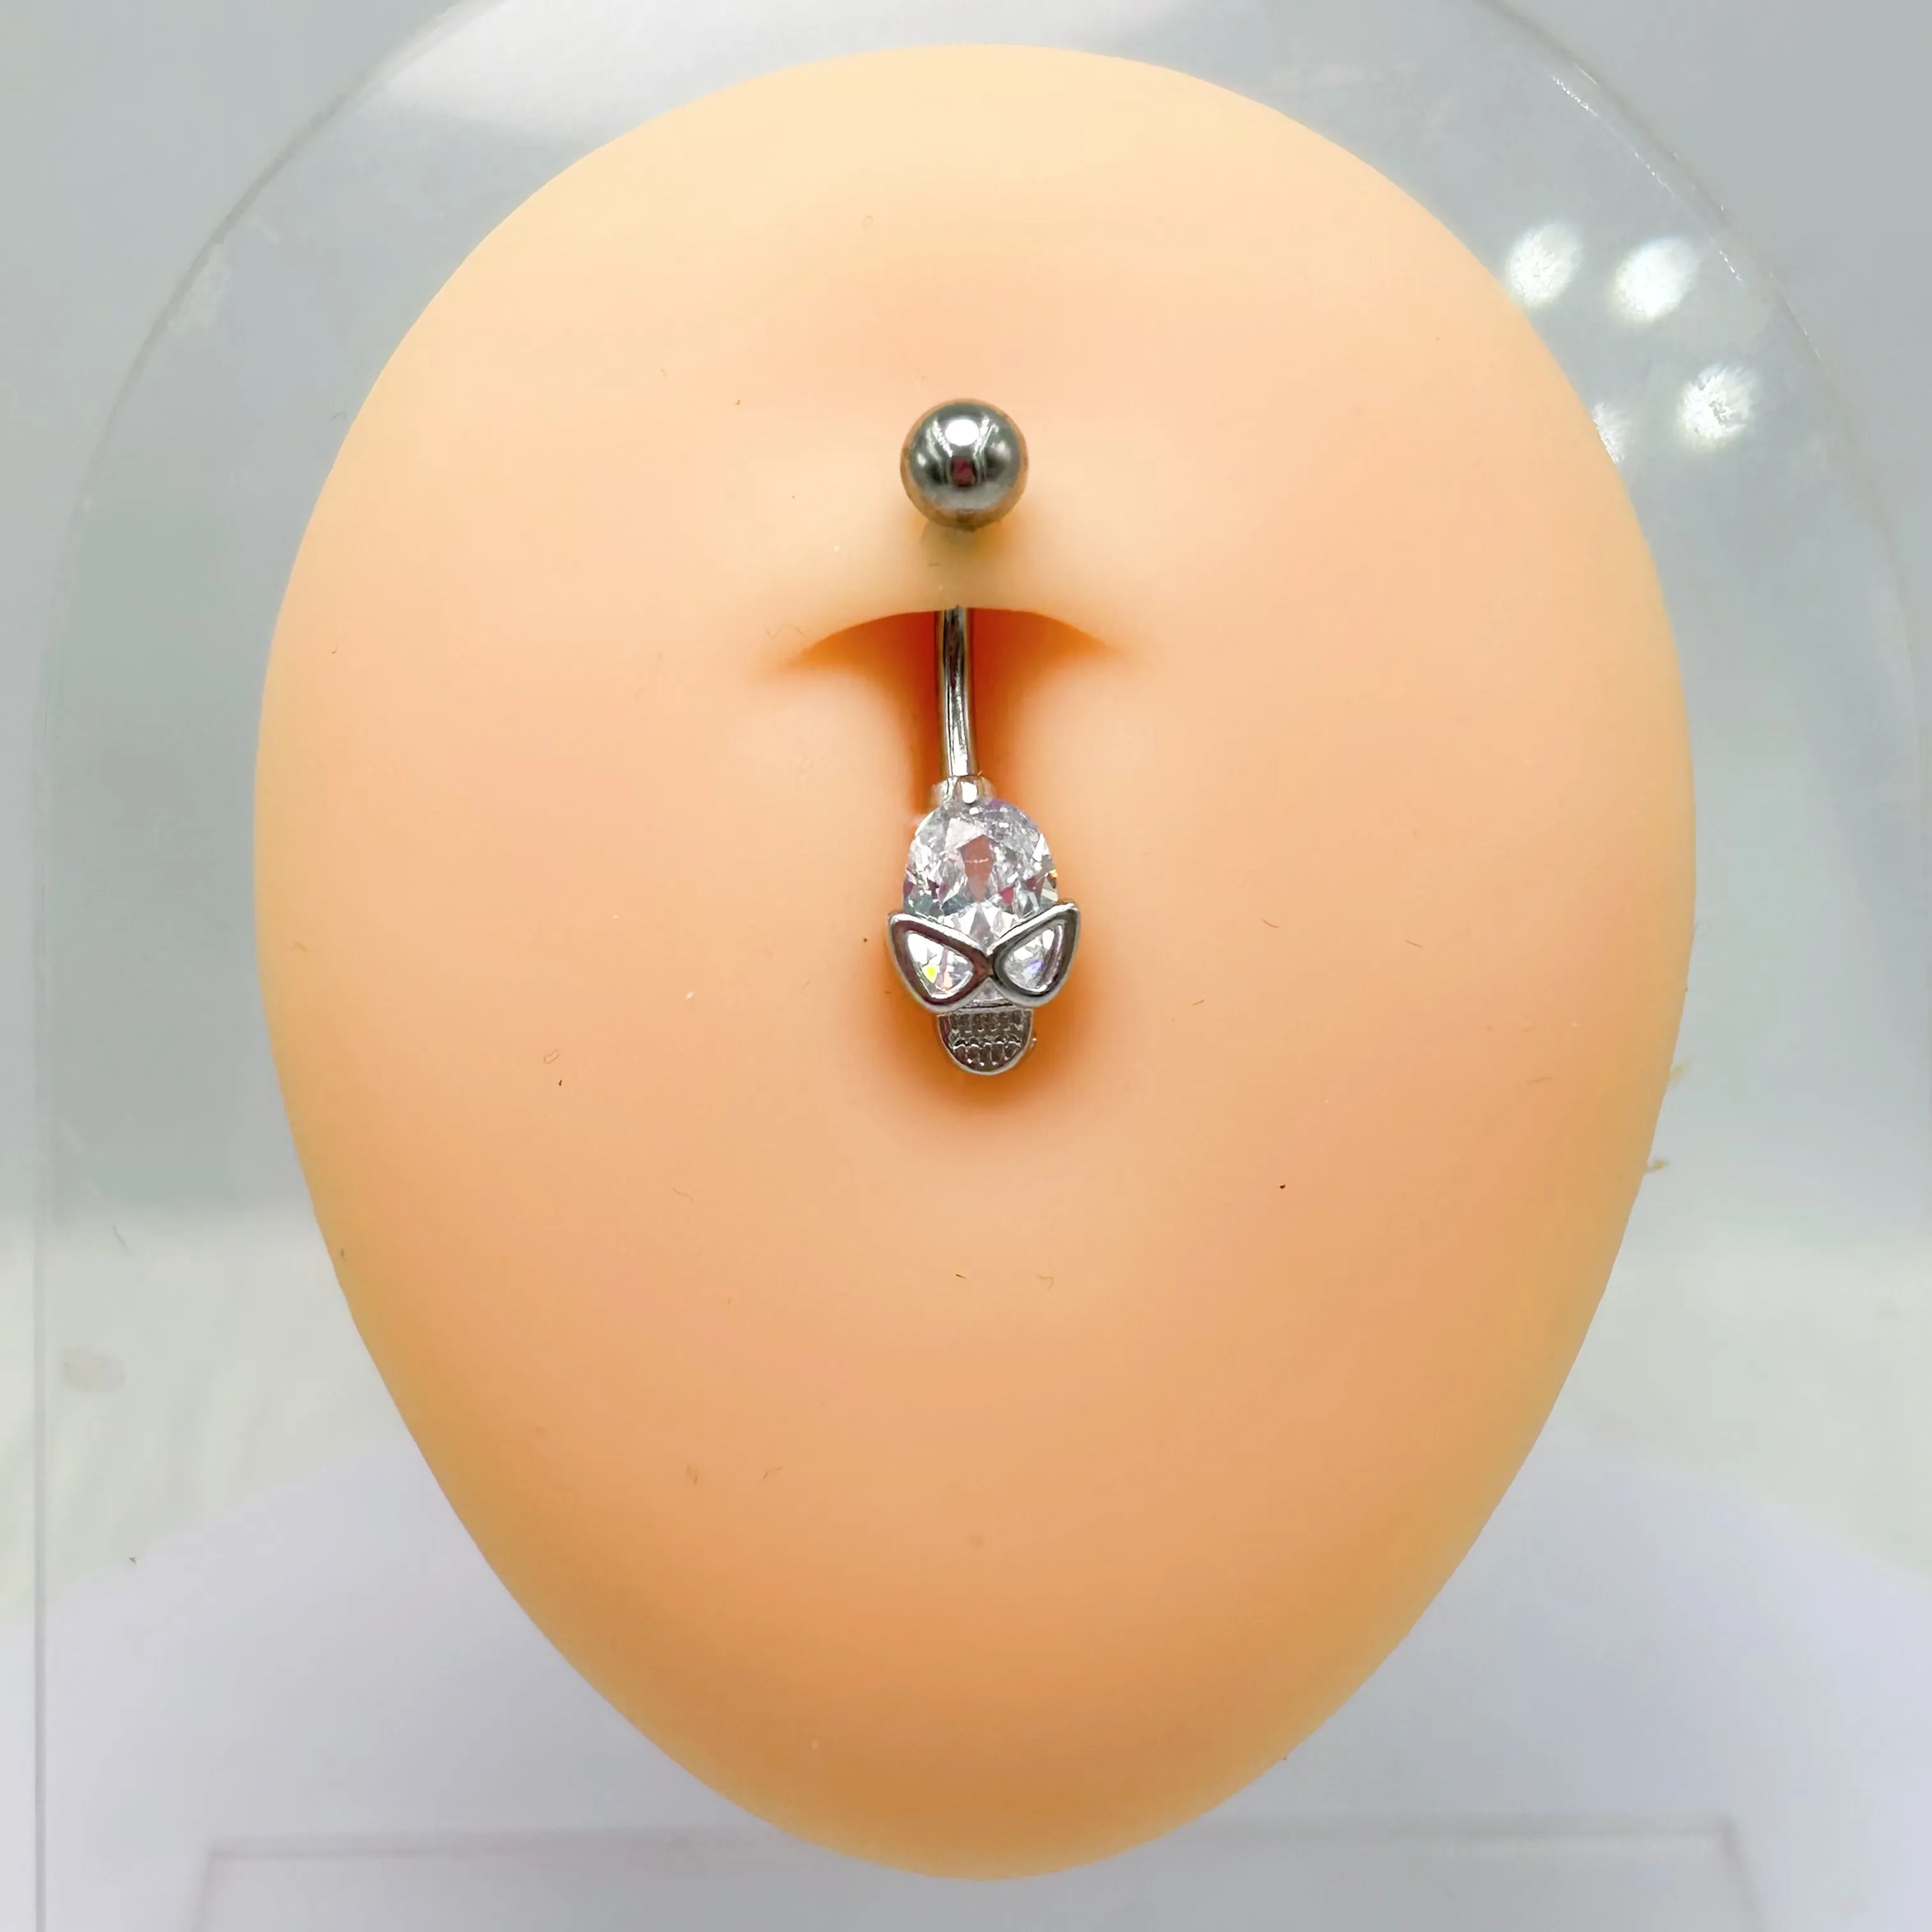 Anelli per ombelico in acciaio inox moda teschio Piercing ombelico pendente 10mm per le donne